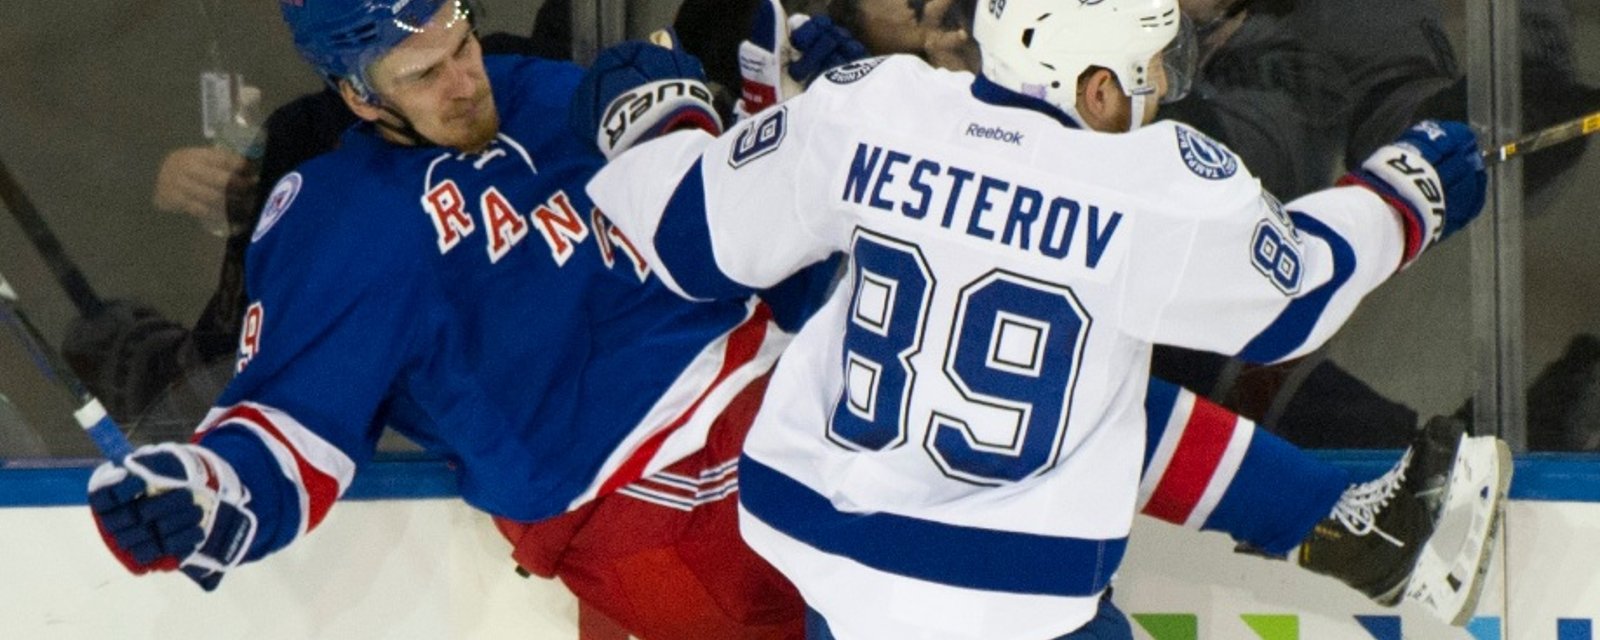 On sait quand Nesterov fera ses débuts avec le Canadien!